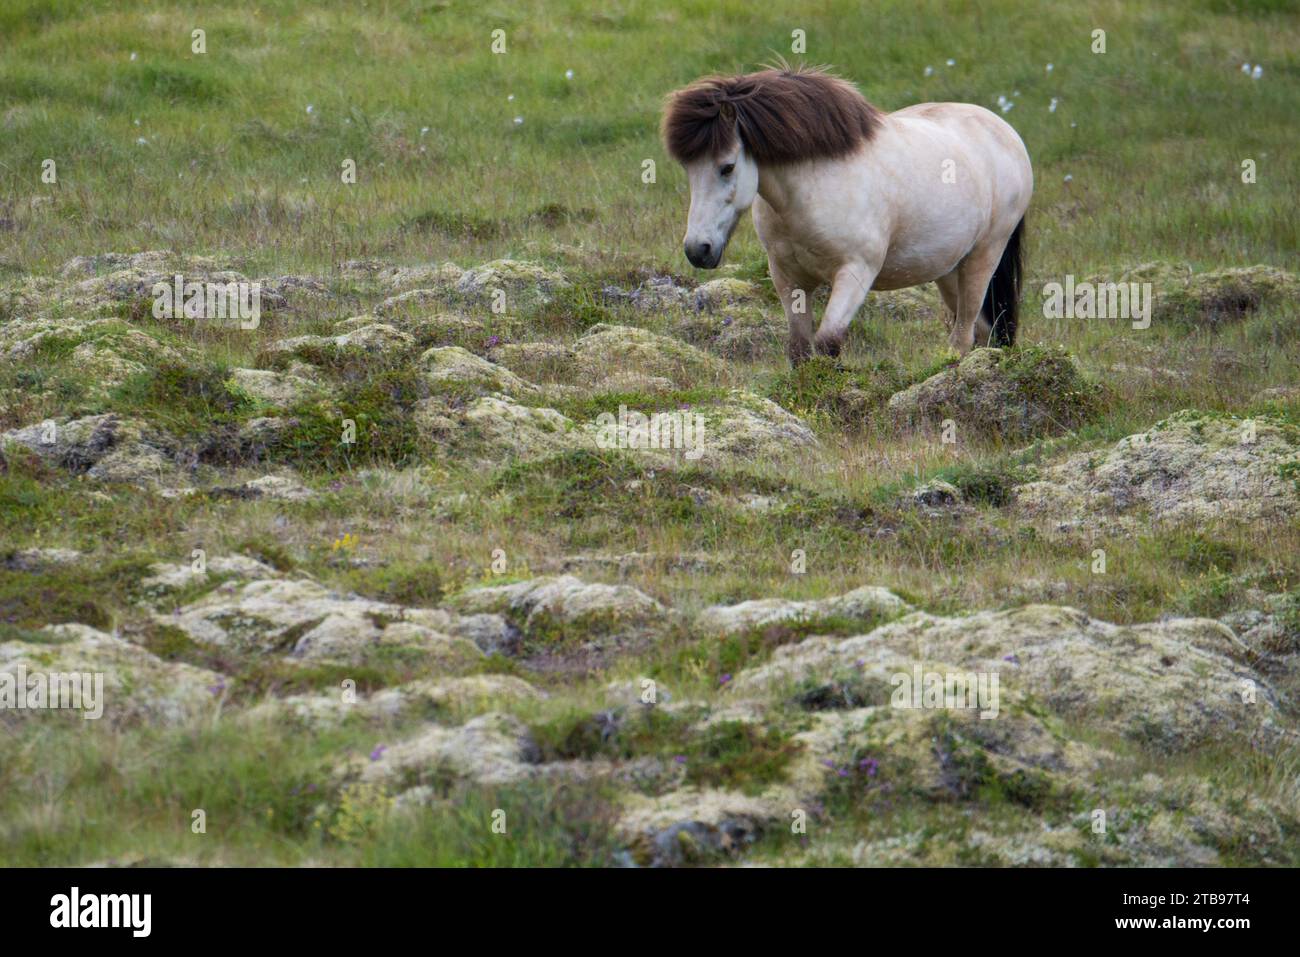 Cheval islandais (Equus ferus caballus) marchant dans un champ rocheux en Islande ; Akureyri, Islande Banque D'Images